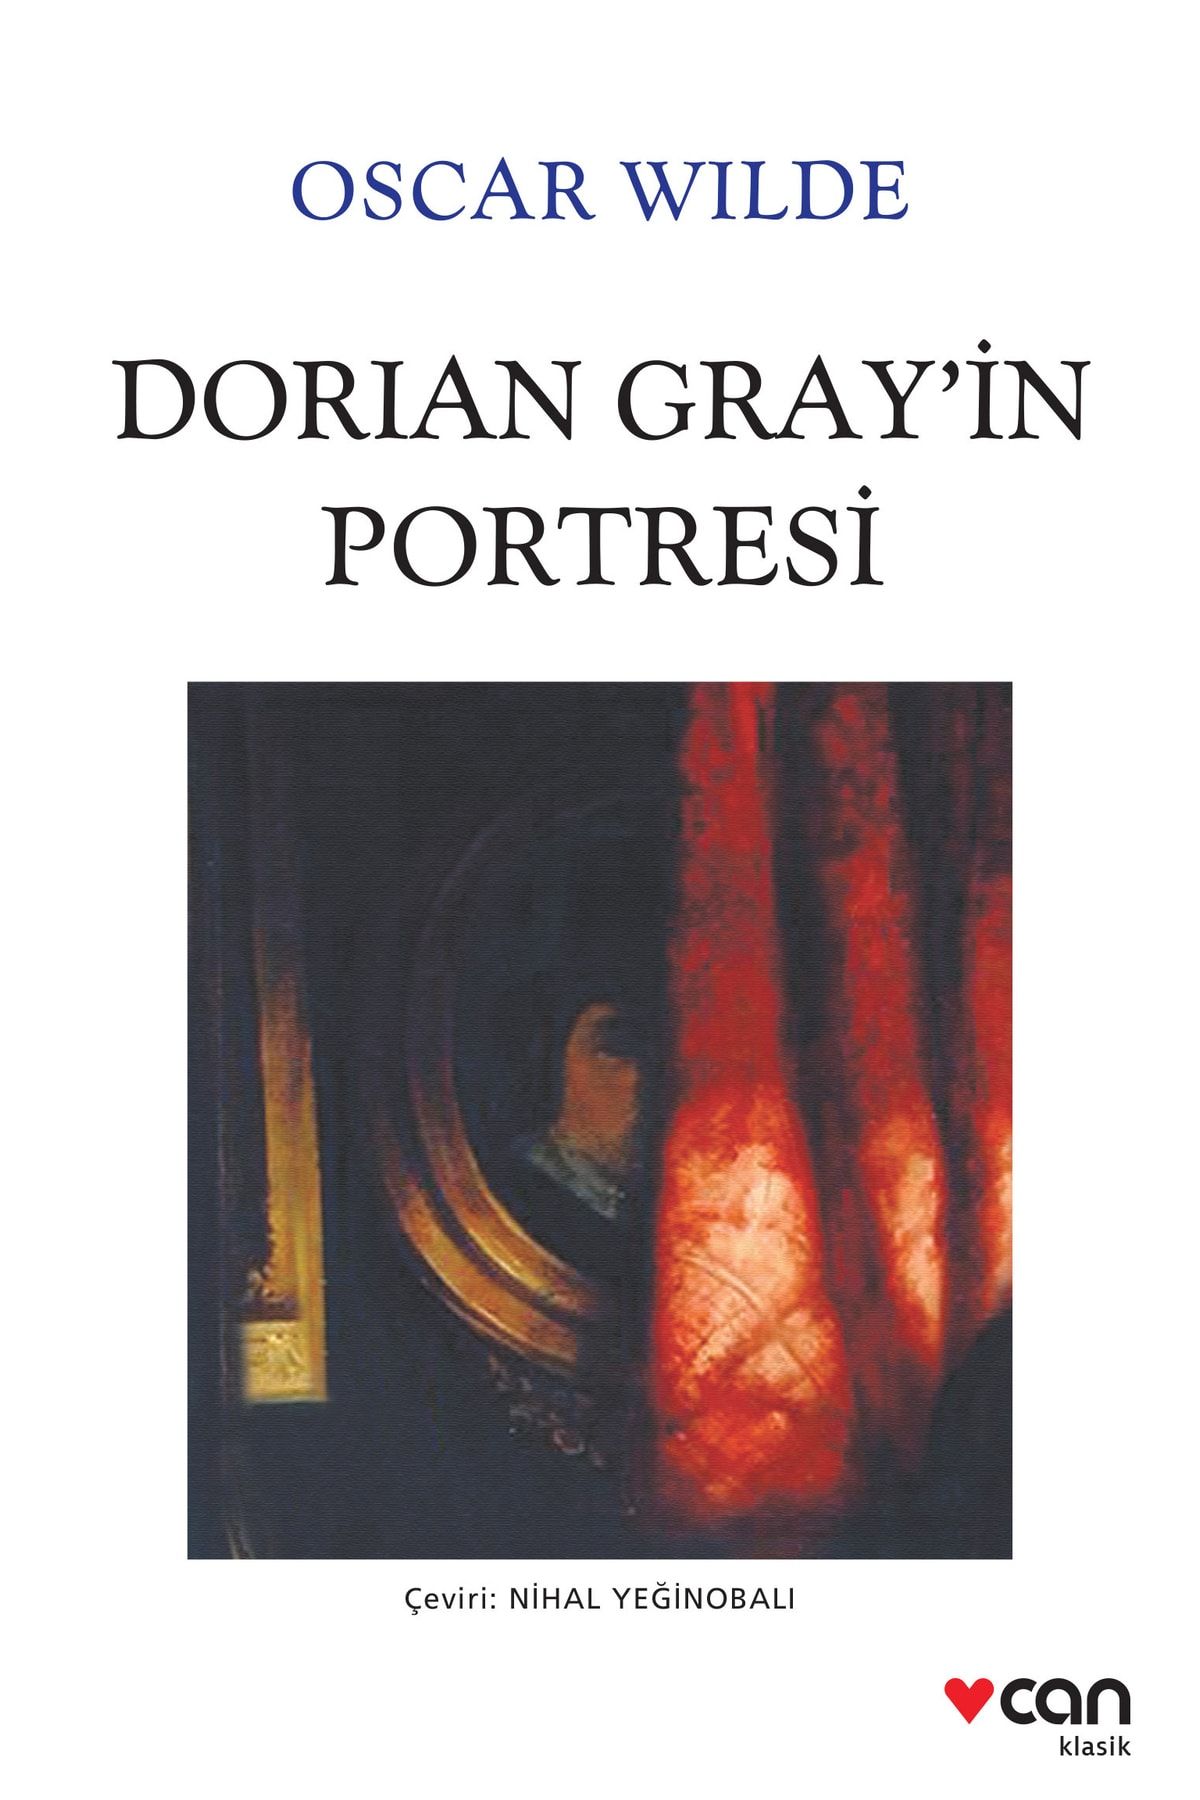 Книга Dorian Gray in portresi